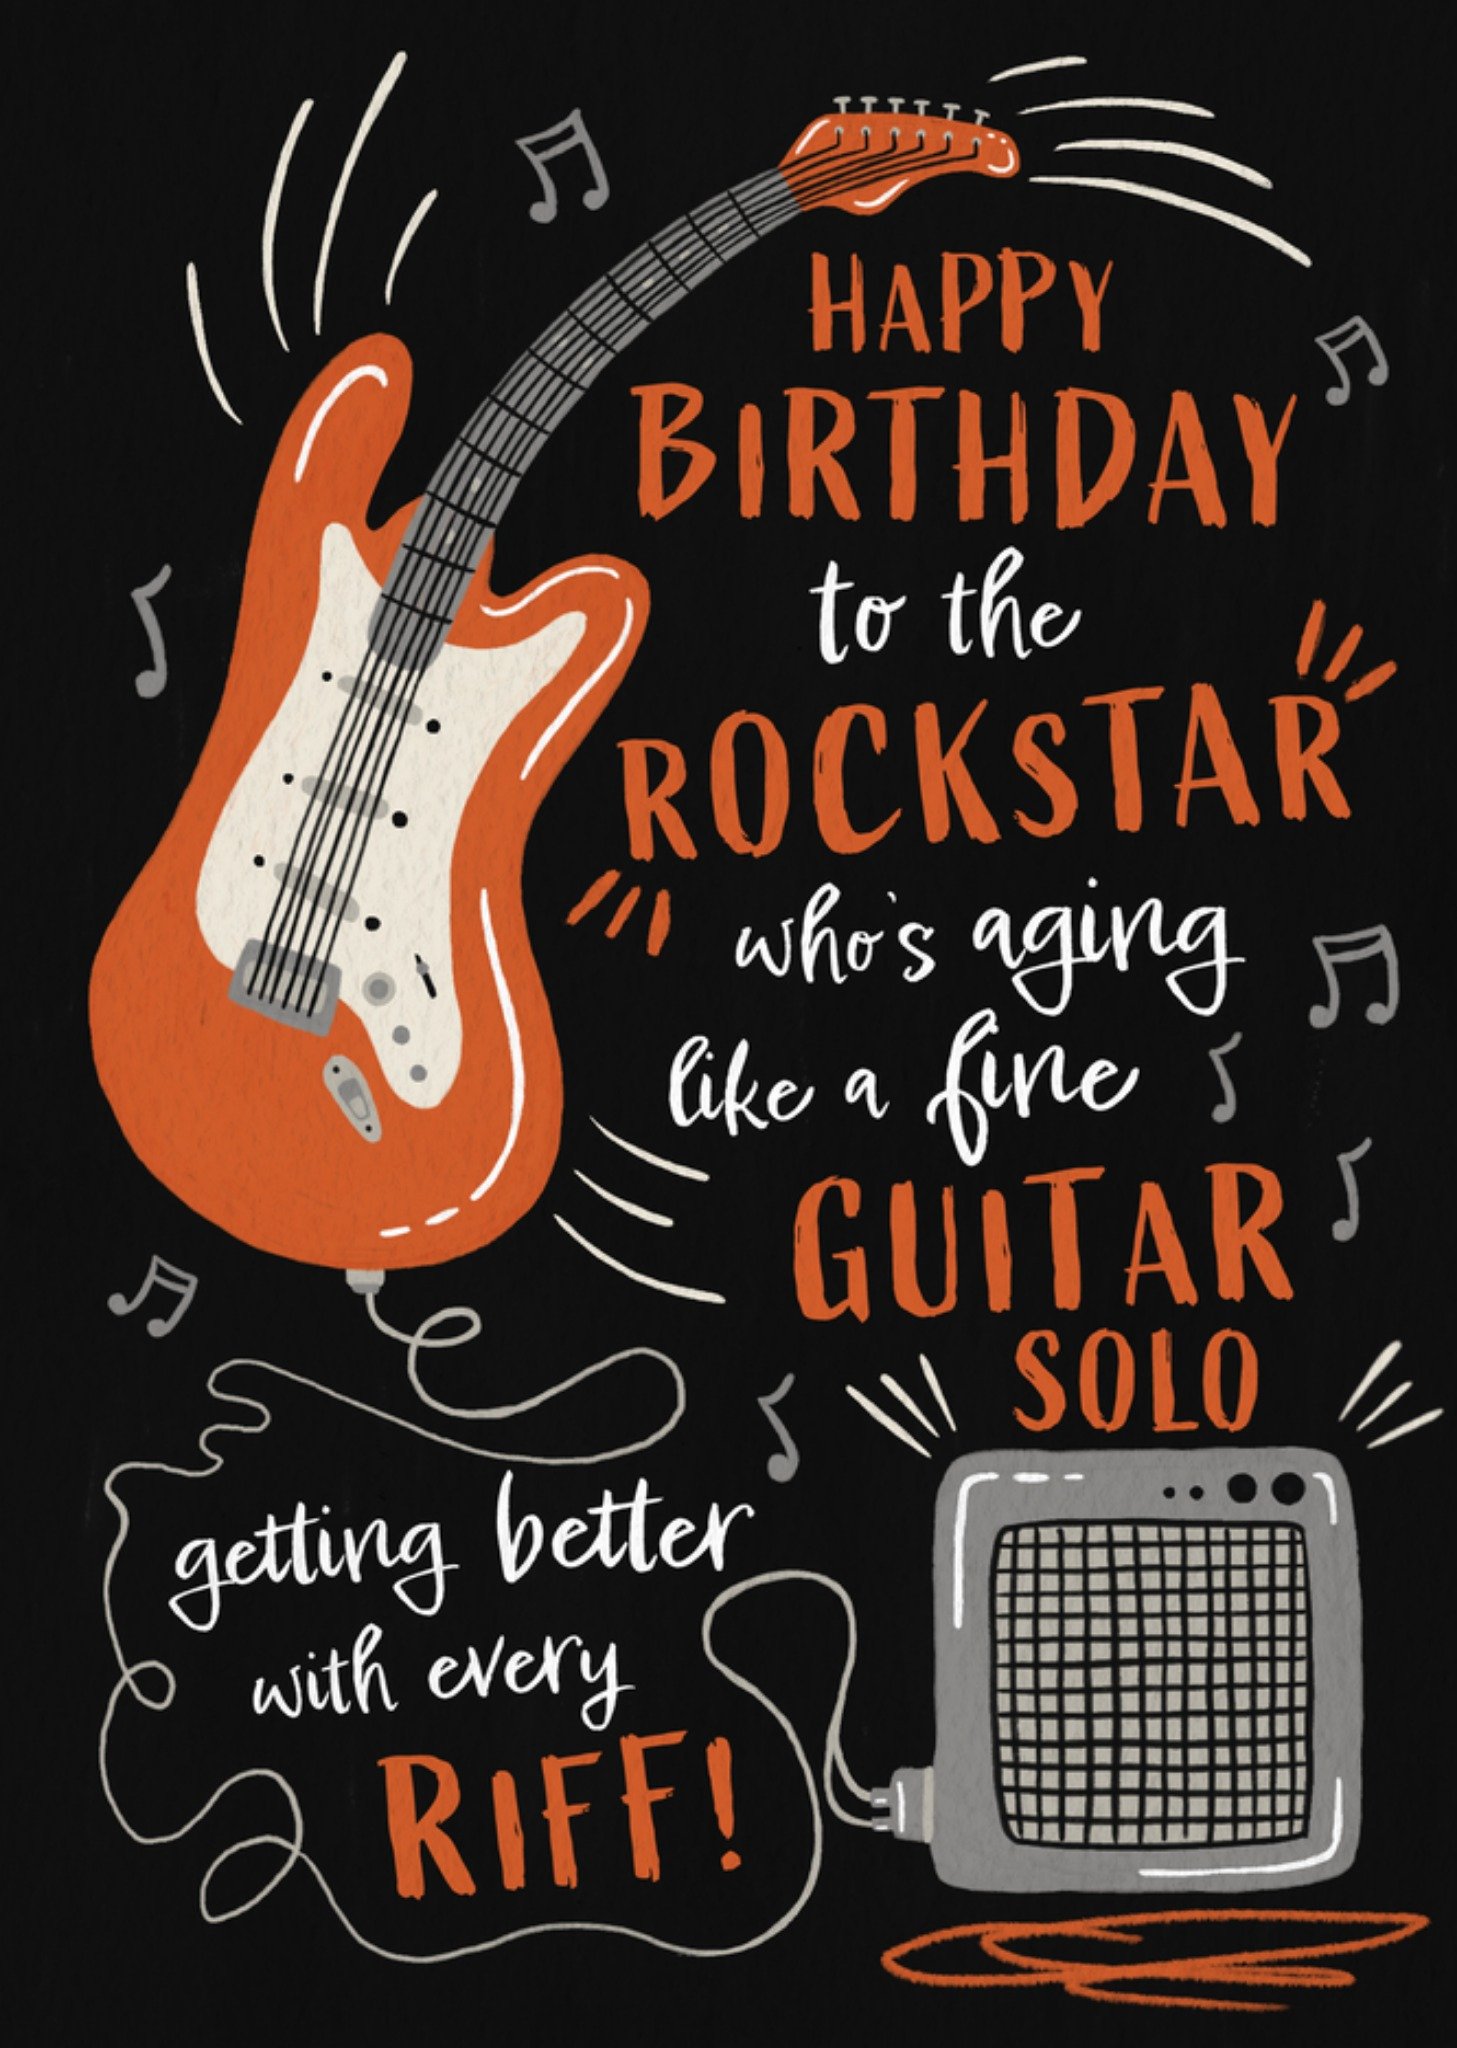 Moonpig Aging Like A Fine Guitar Solo Rockstar Birthday Card Ecard